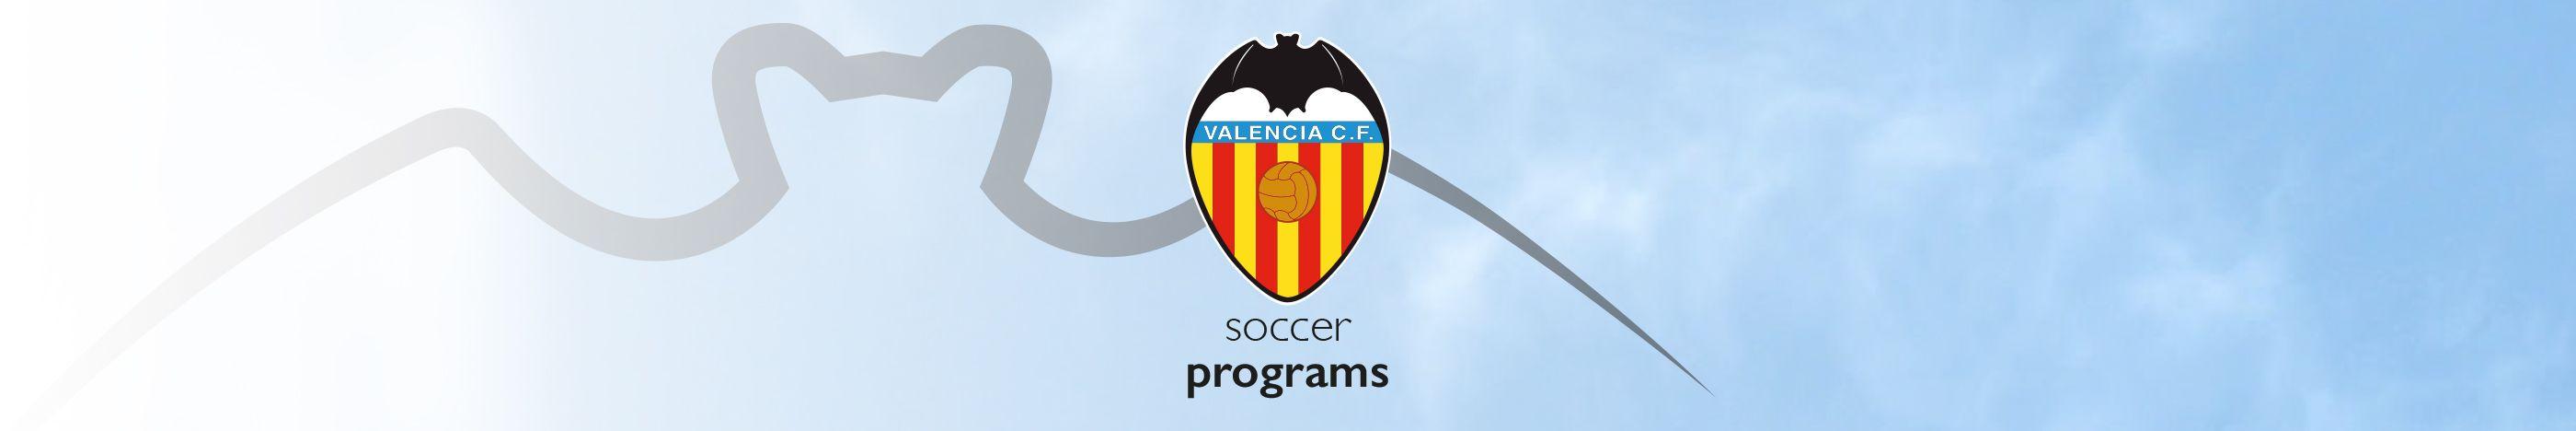 Valencia Soccer Logo - Soccer Camps - Valencia CF - Valencia CF Official webpage